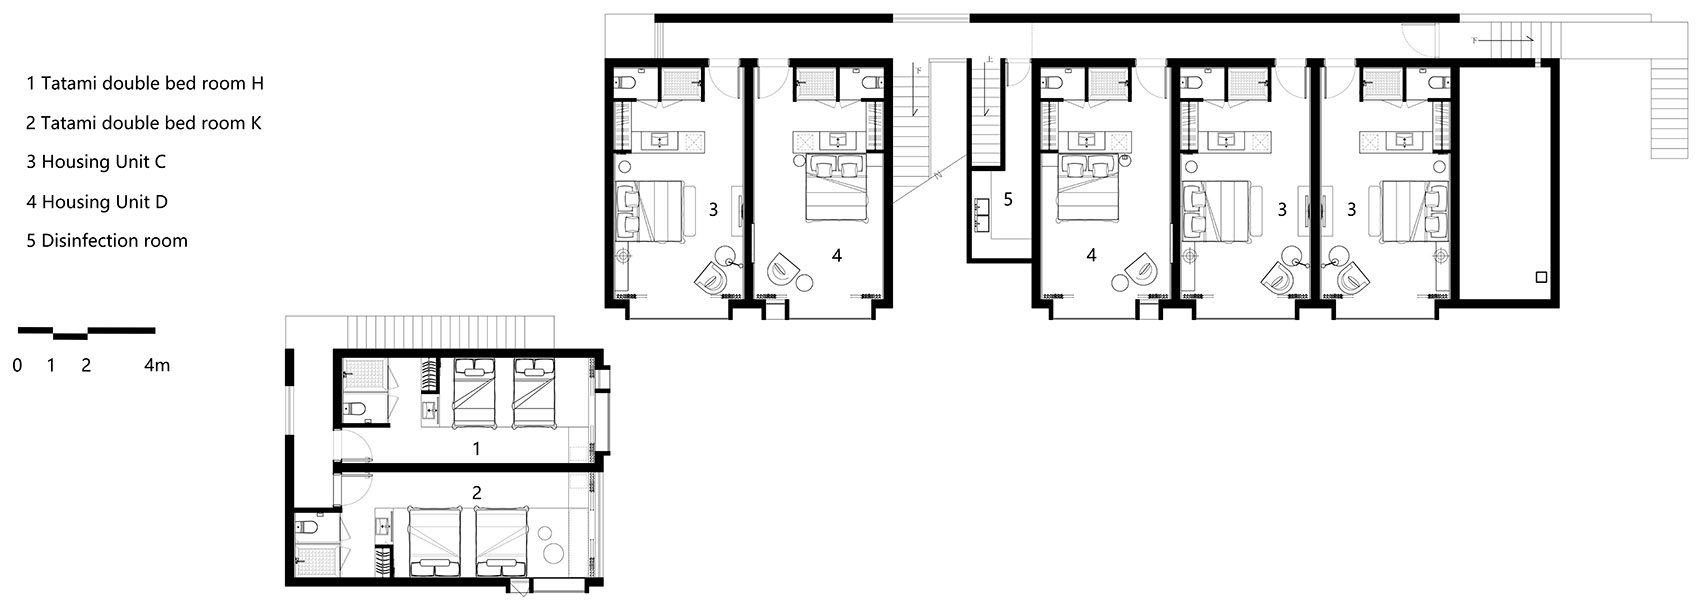 38-HOUSE-OF-MO_DPAA-Design-Studio.jpg